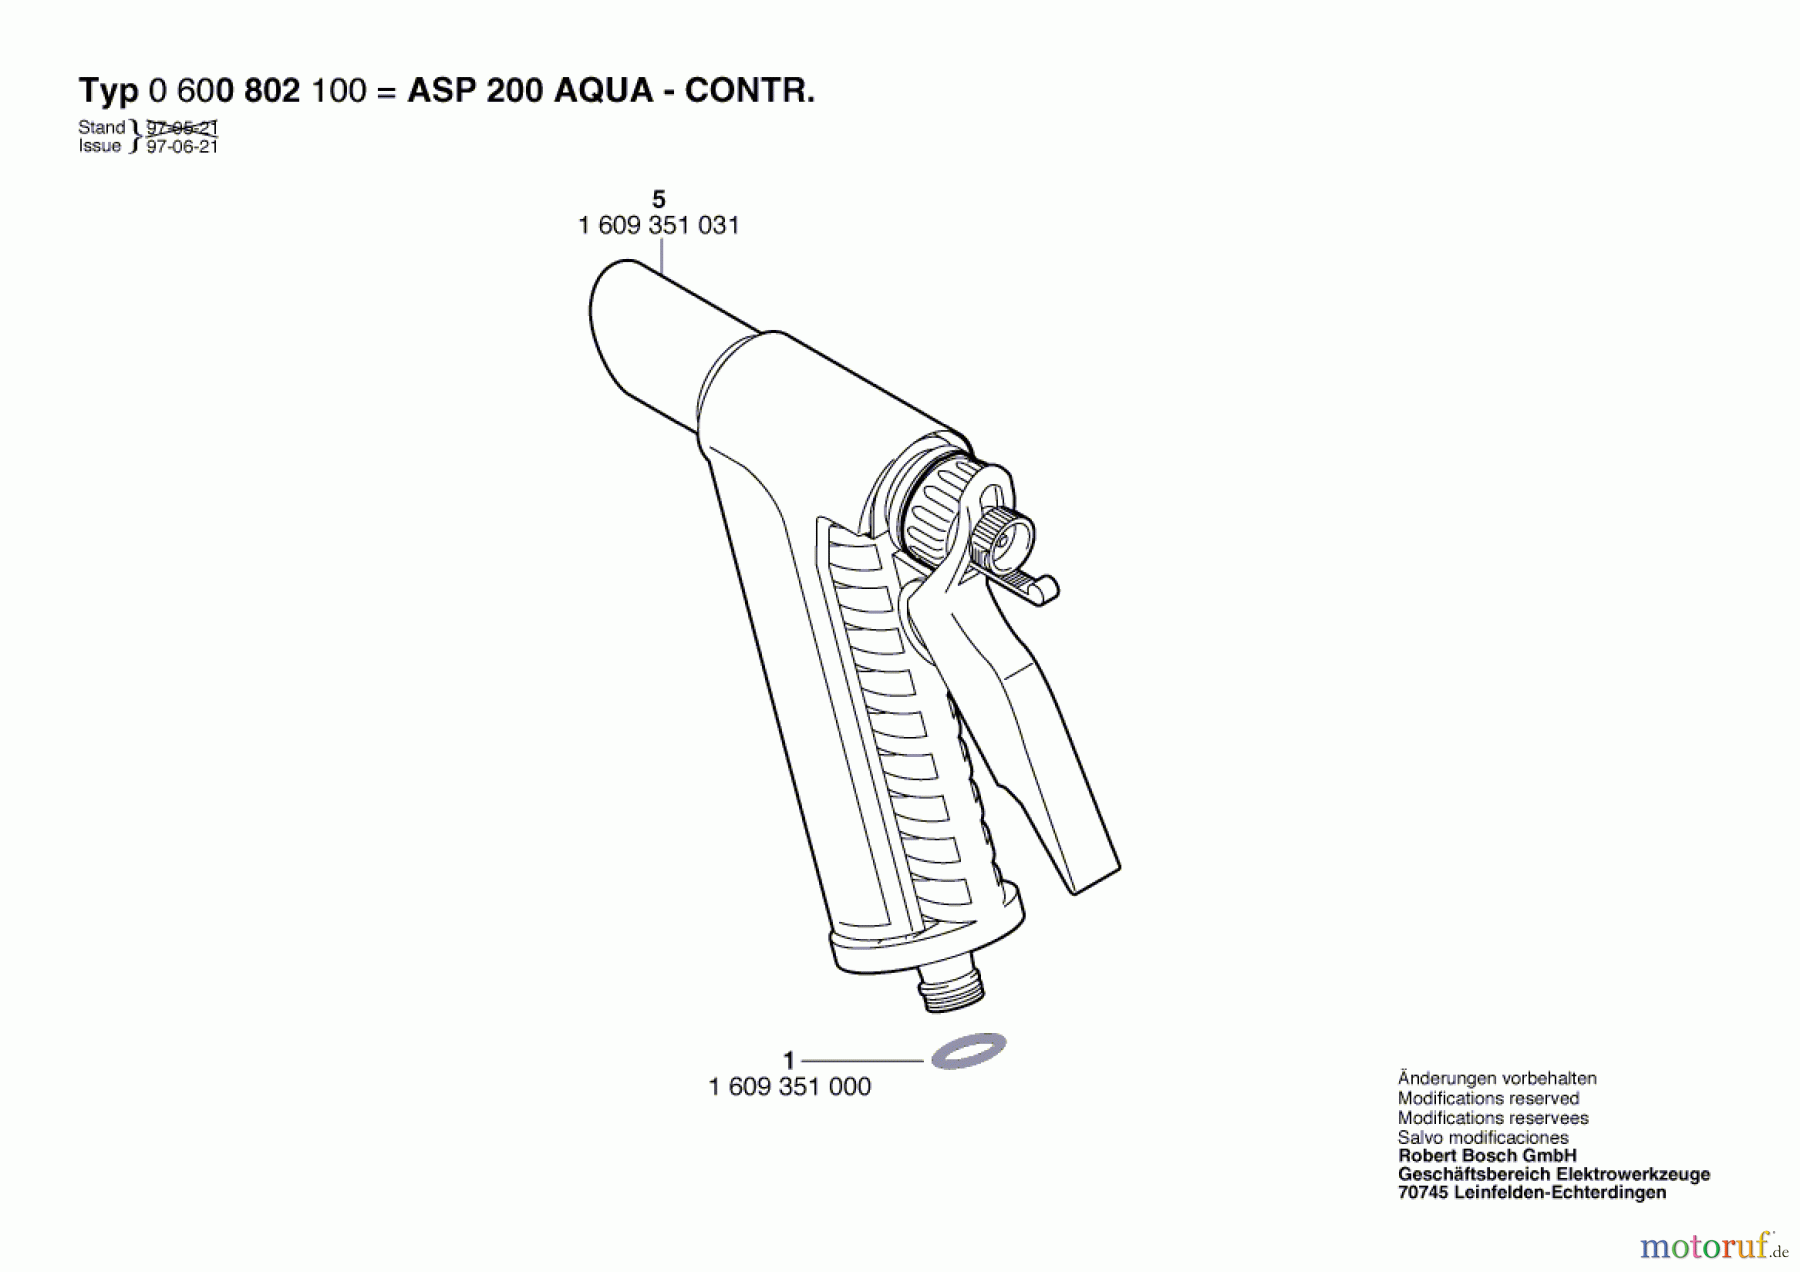  Bosch Wassertechnik Spritzpistole ASP 200 AQUA-CONTR. Seite 1